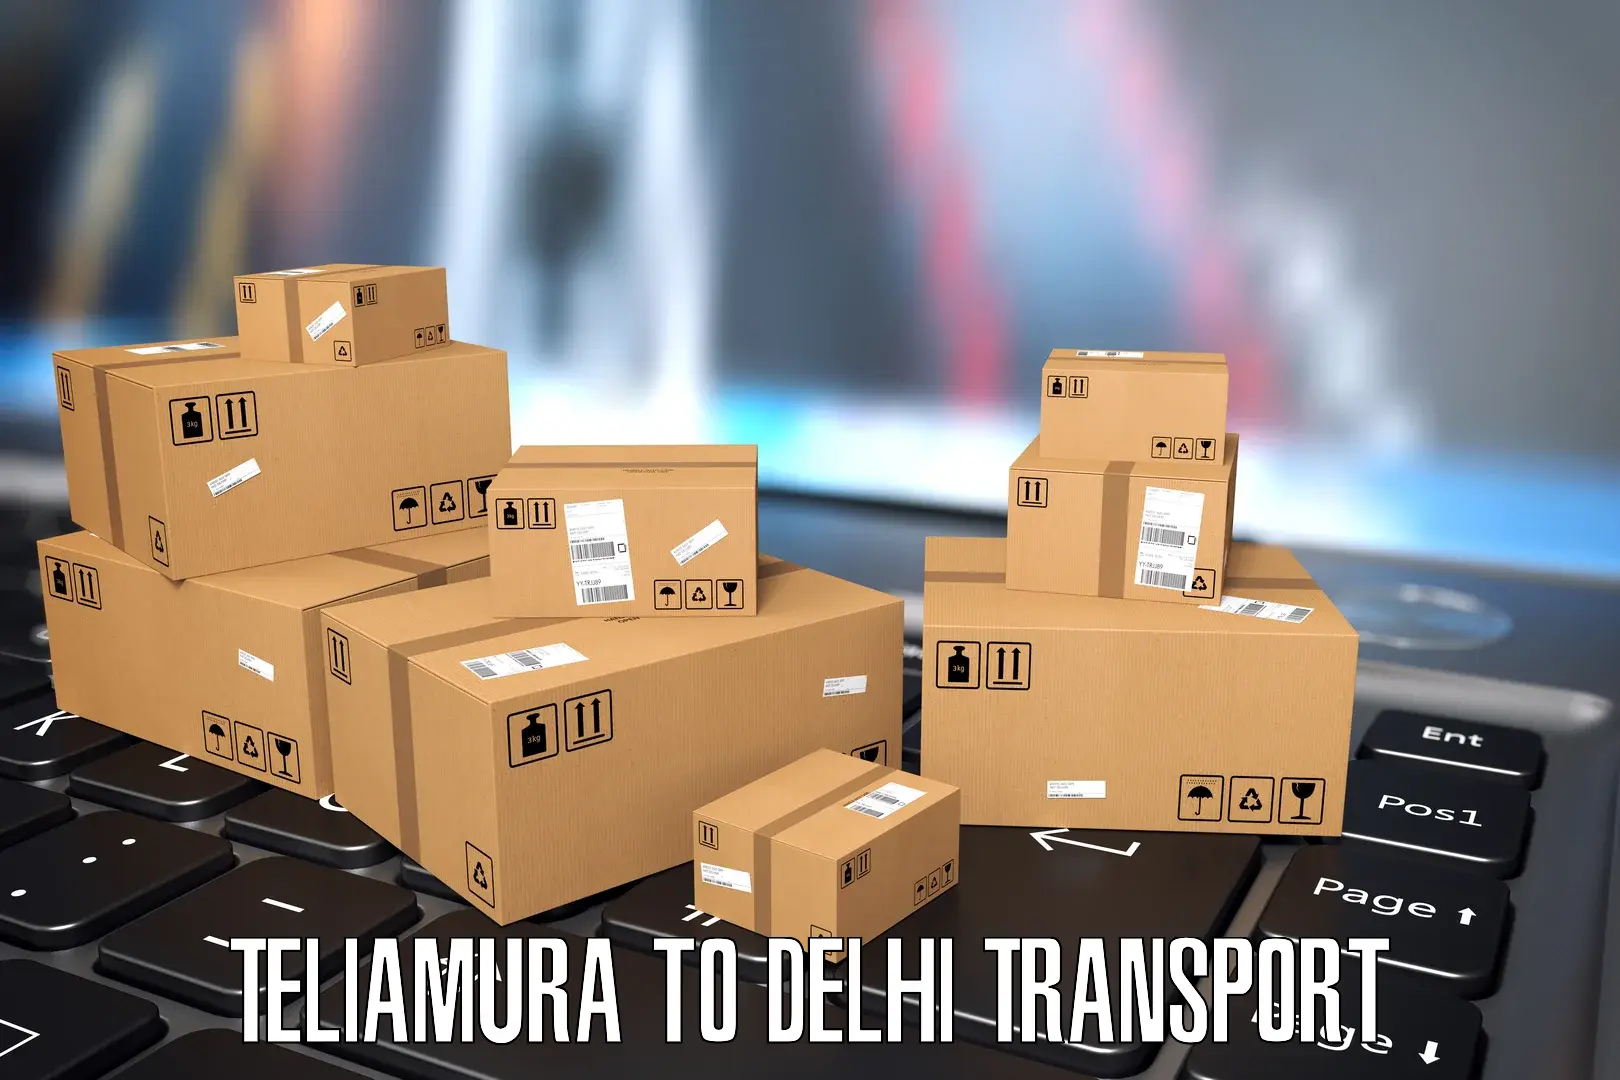 Daily transport service Teliamura to Sarojini Nagar